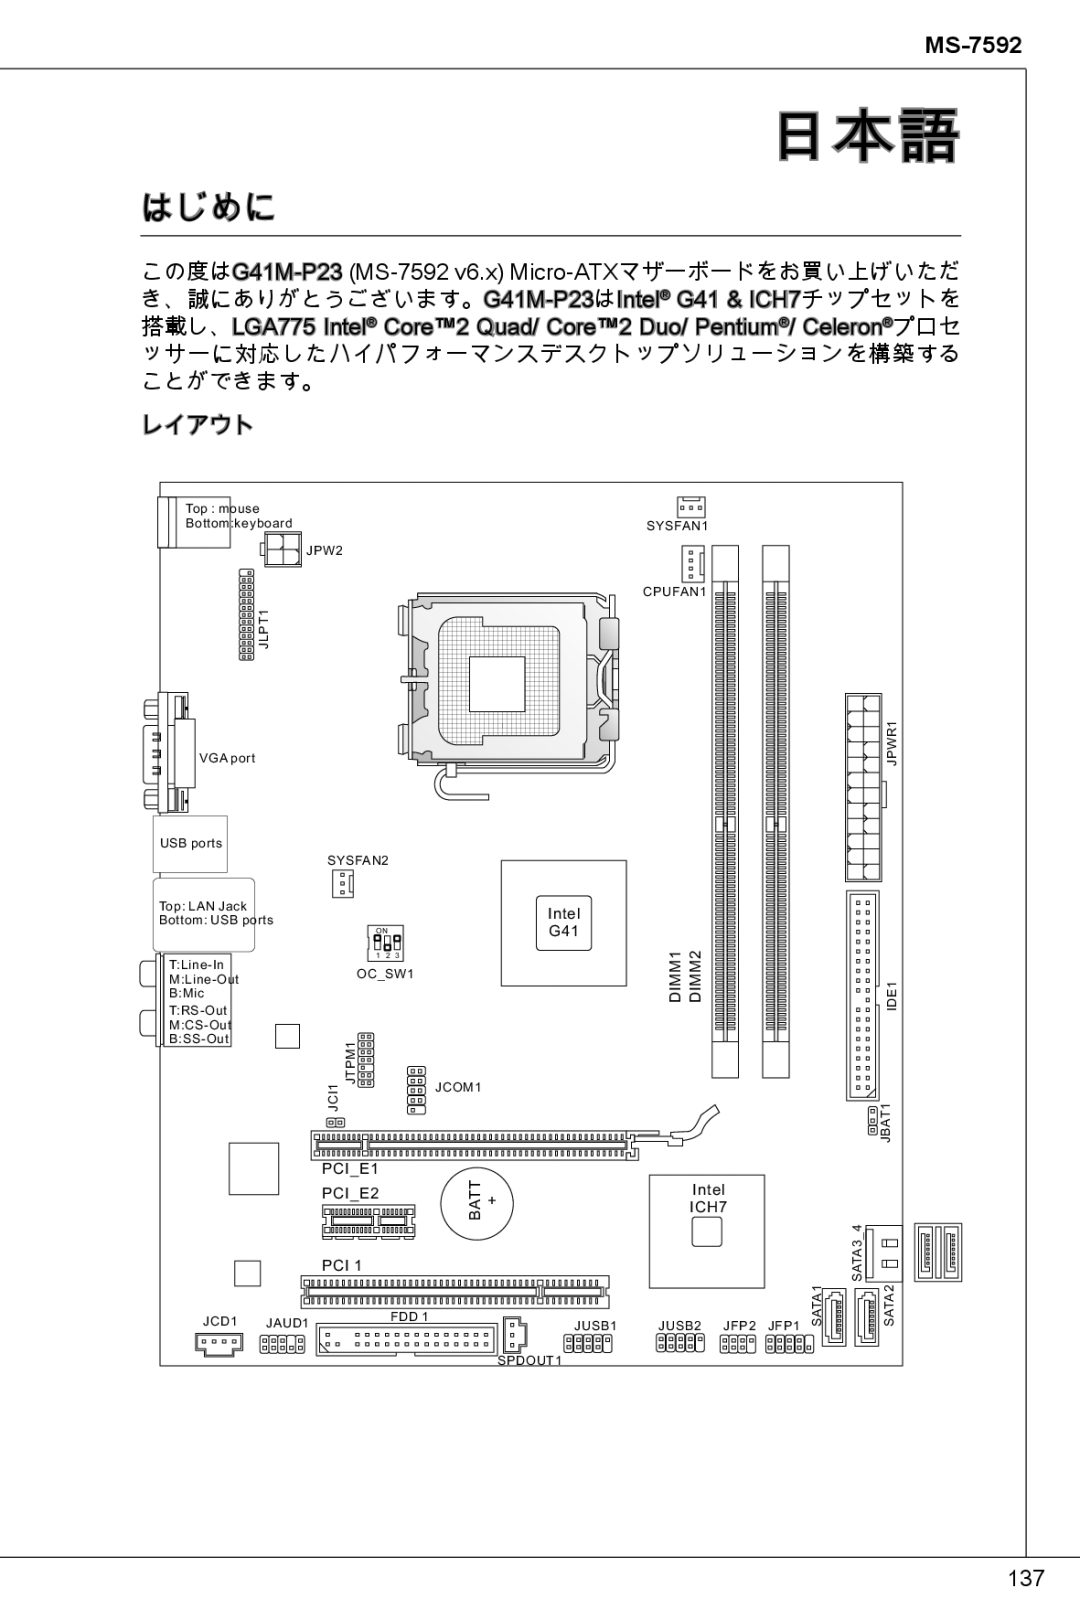 MSI G41M-P23 manual 日本語, はじめに 